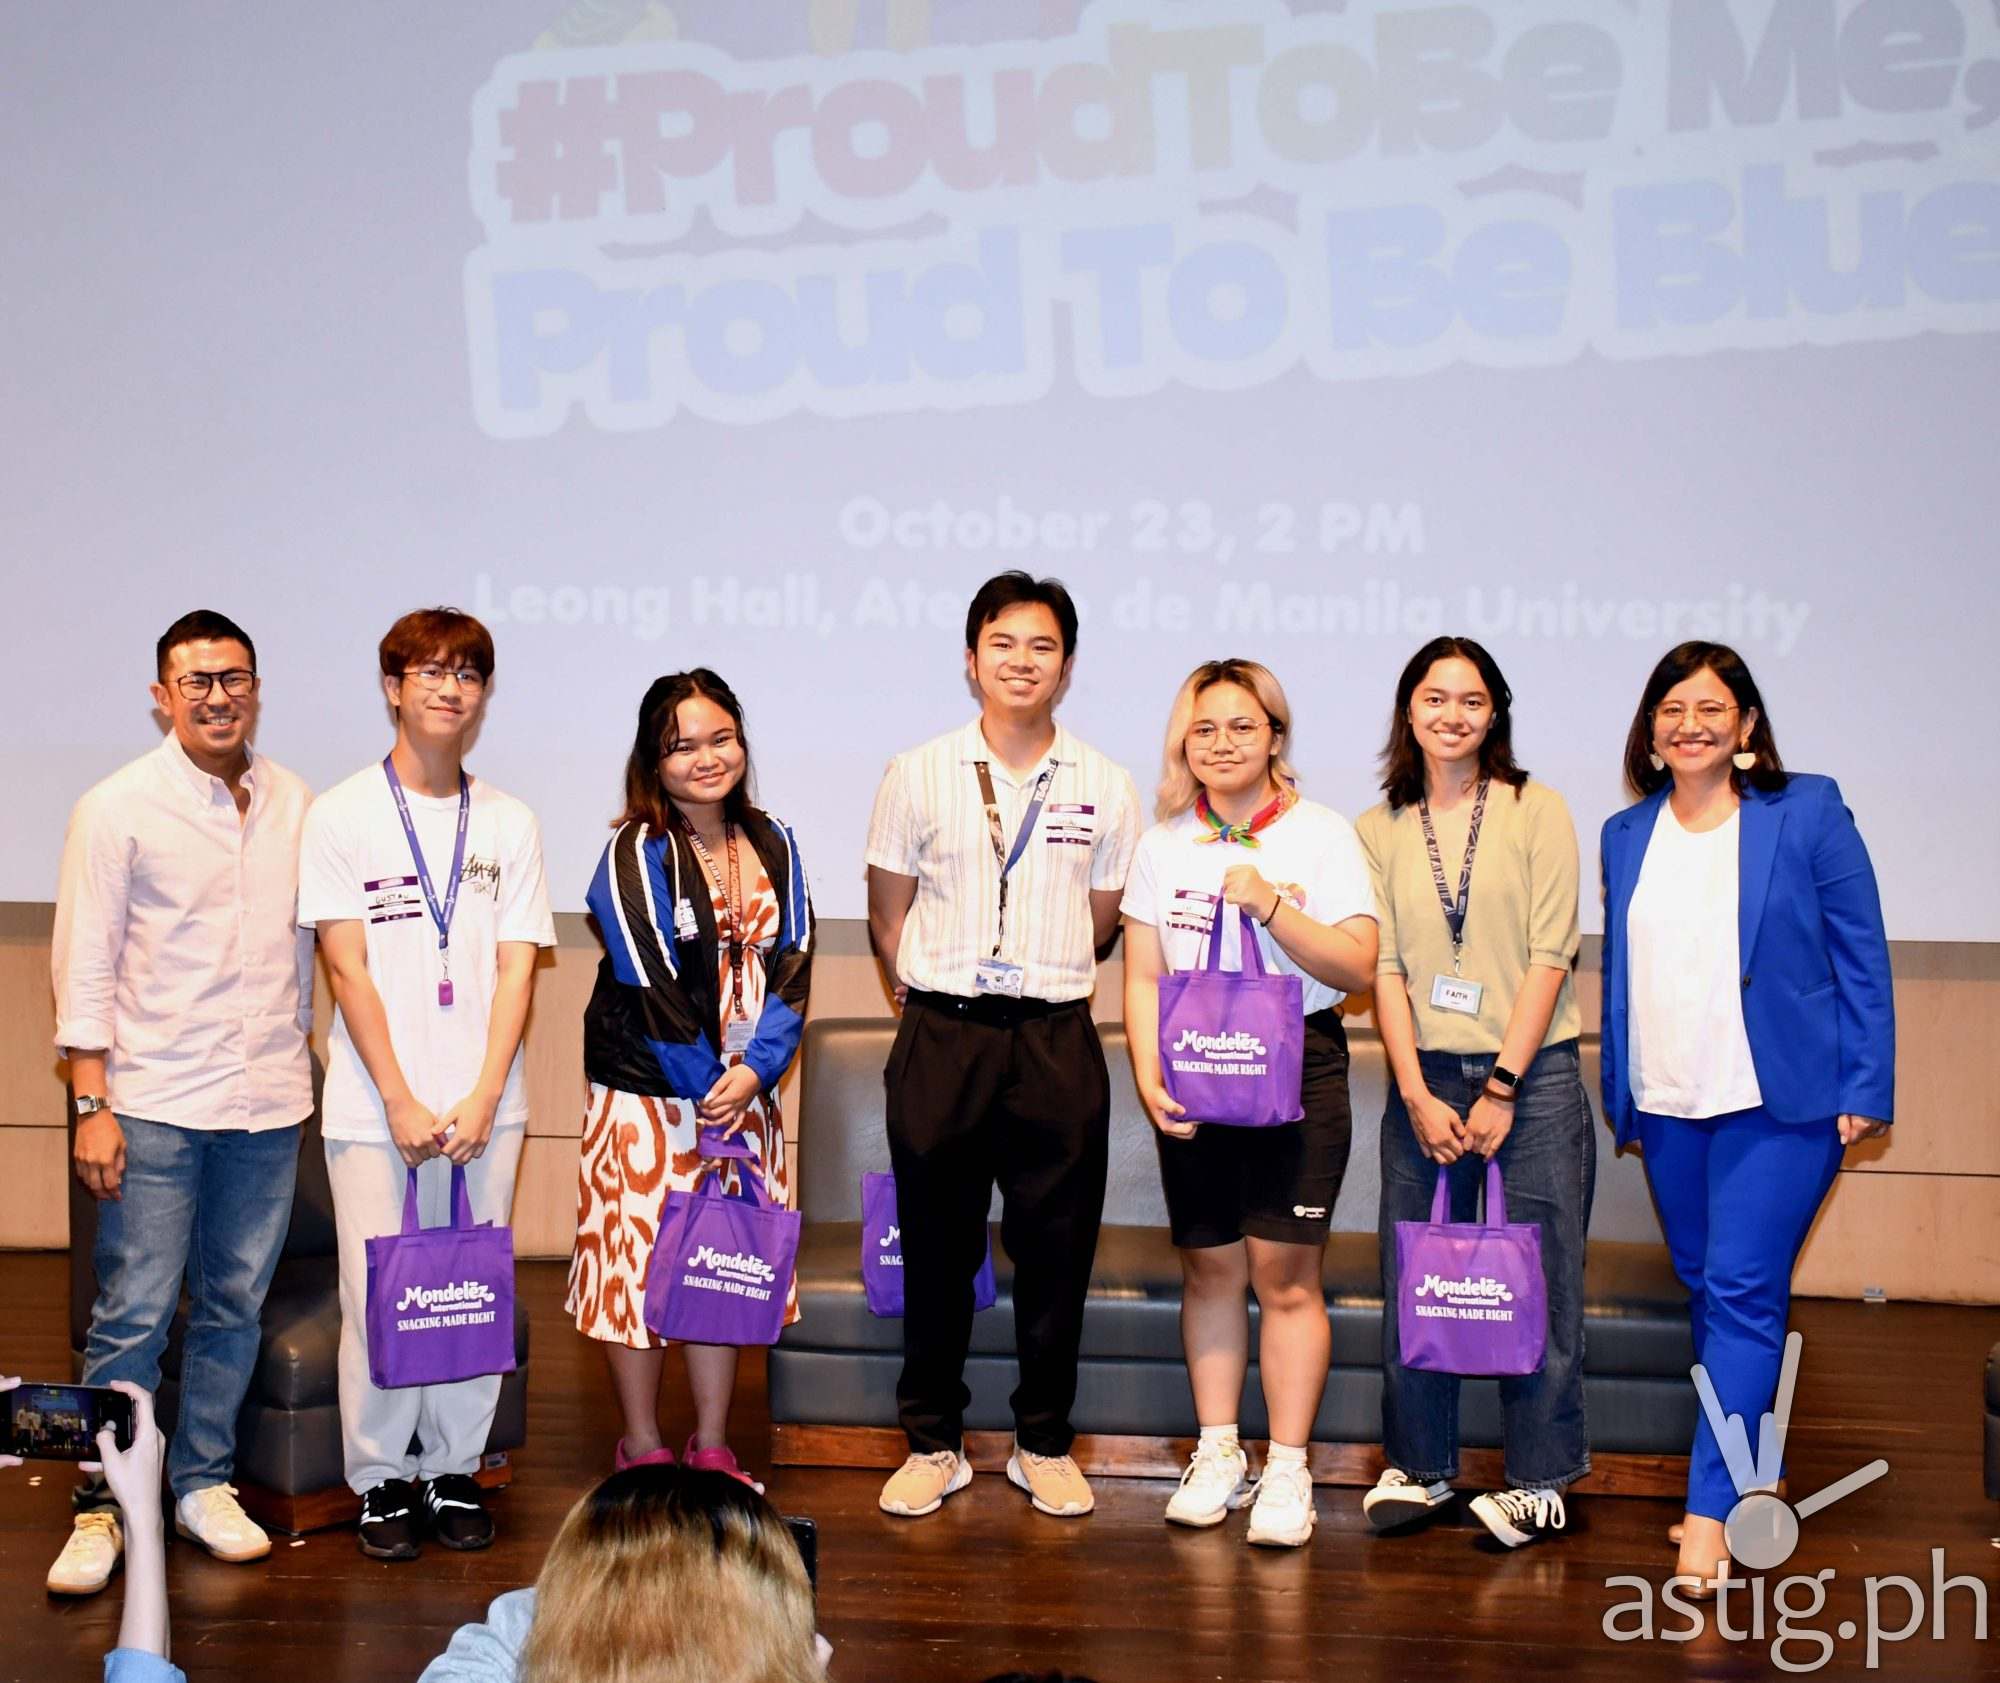 #ProudToBeMe, Proud To Be Blue: Mondelez Philippines and Ateneo de Manila University celebrate Pride [event]